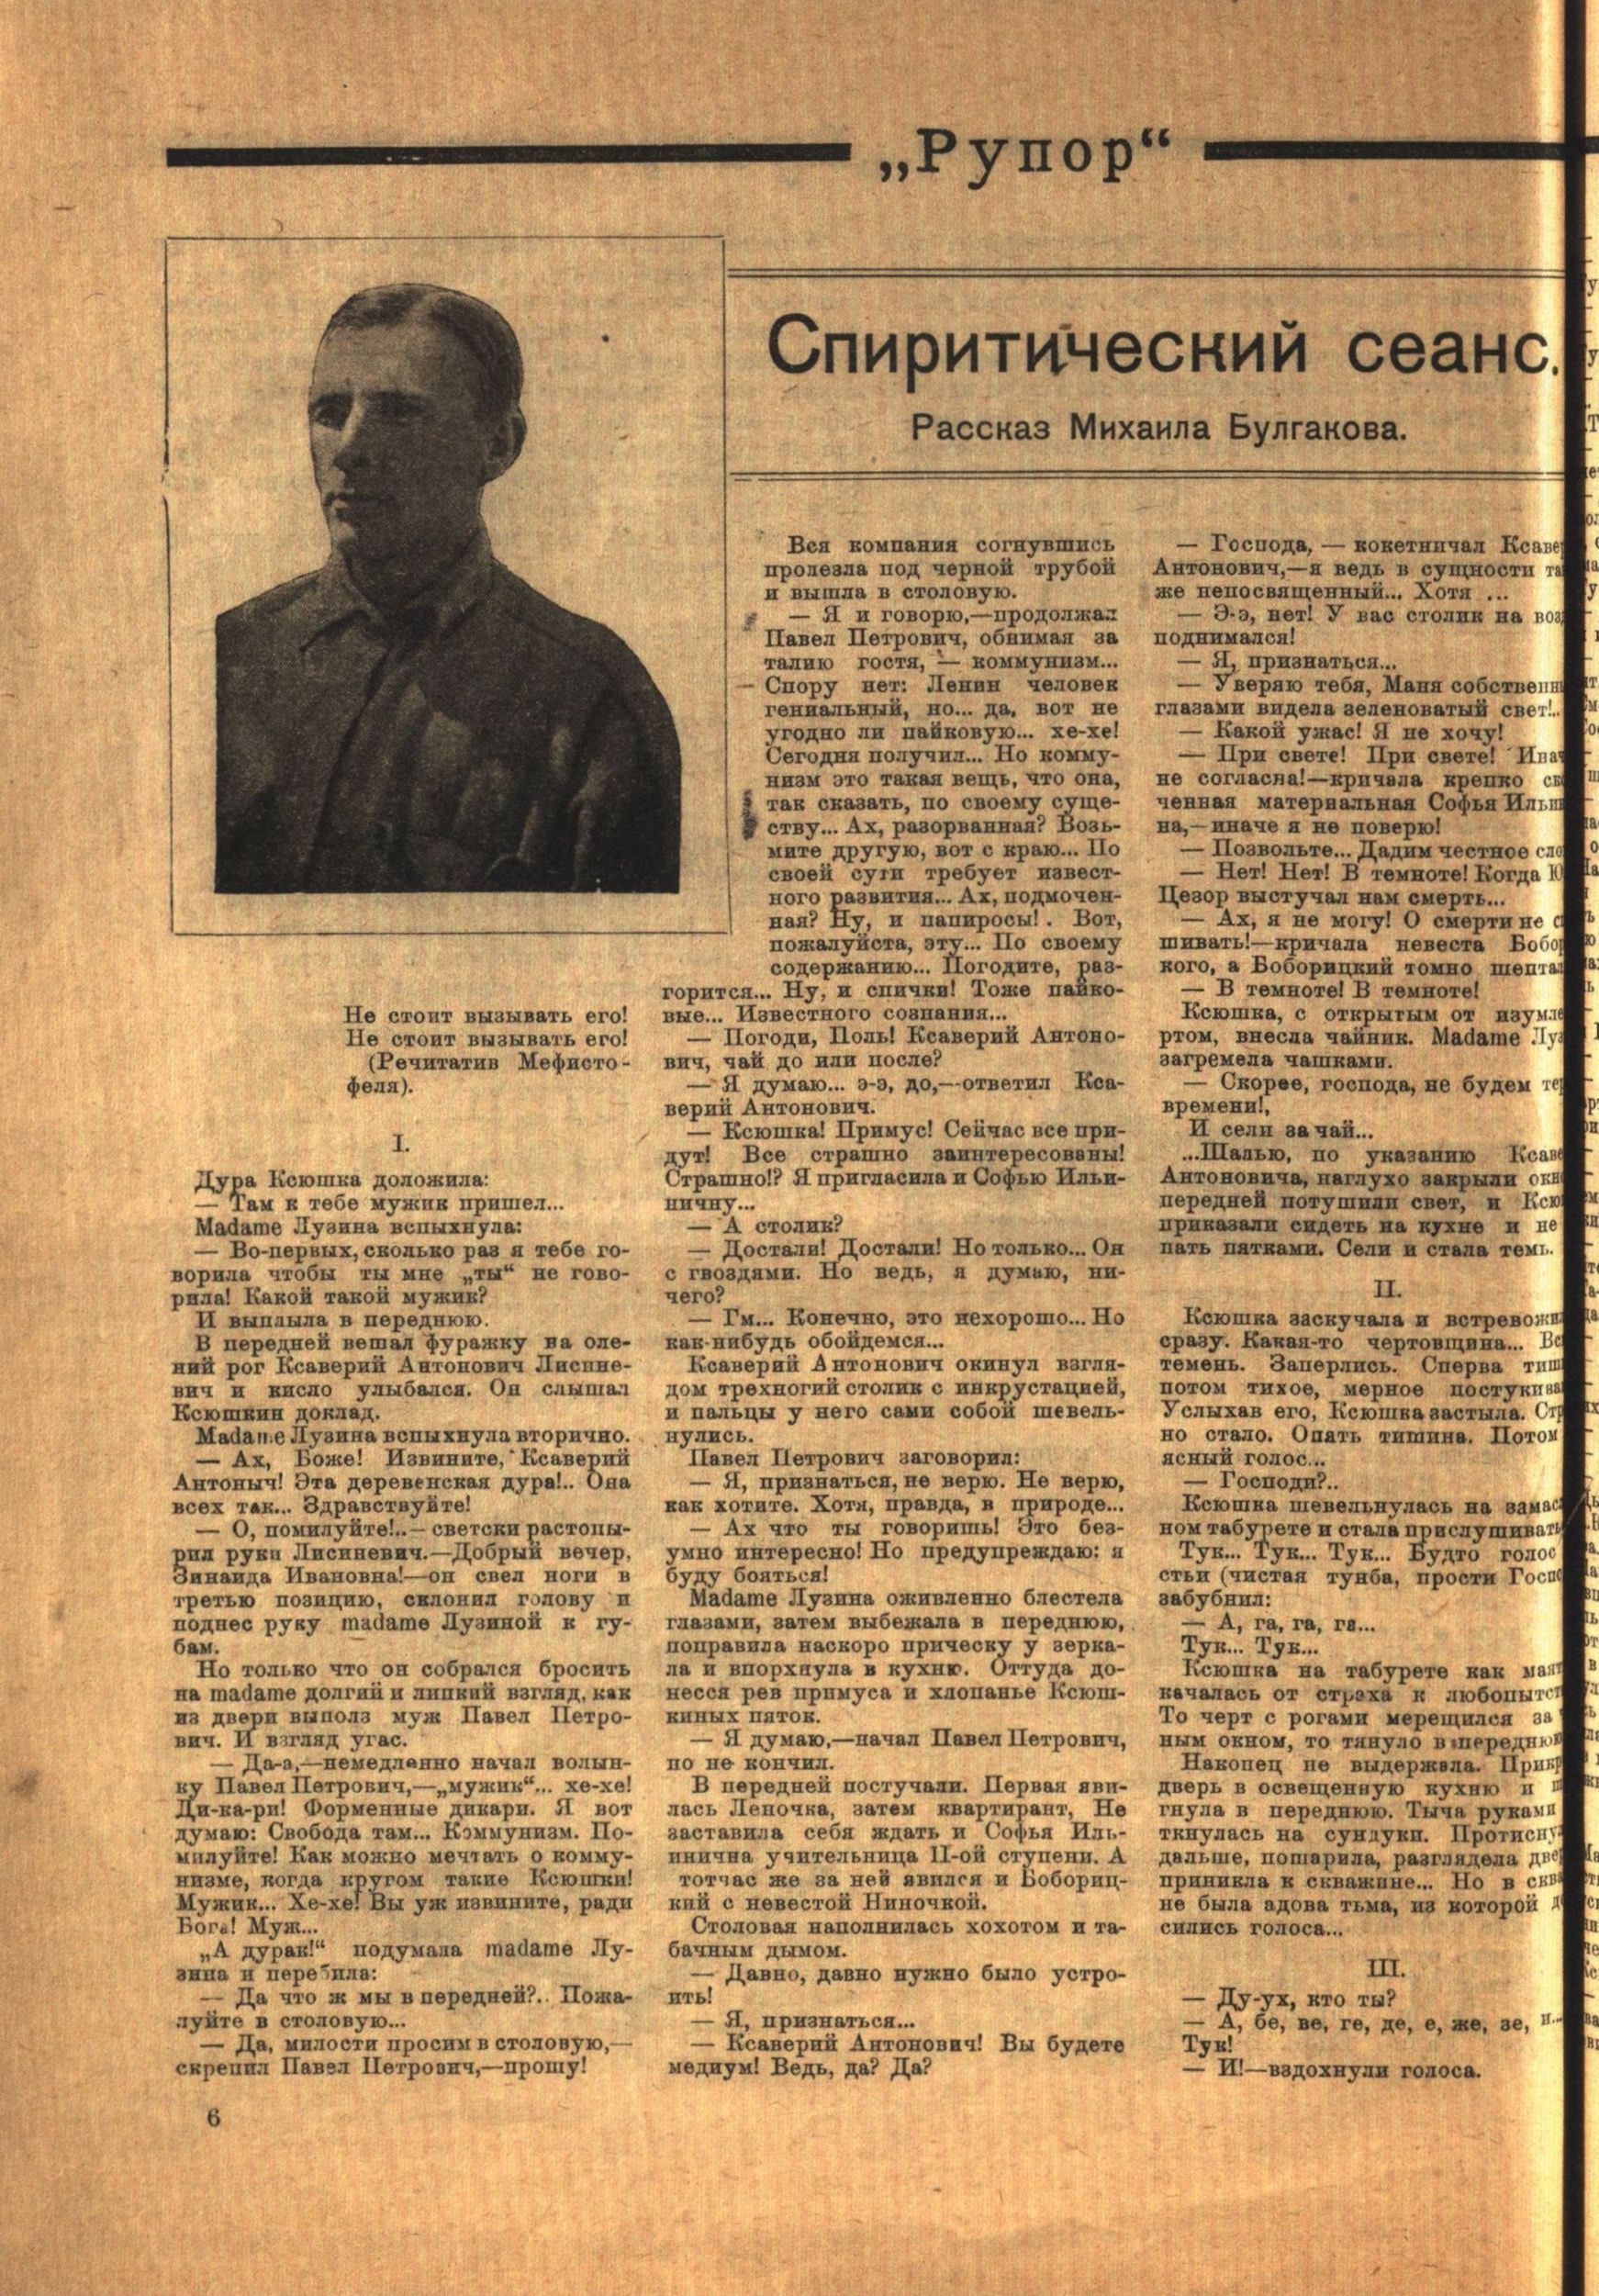 Журнал «Рупор» (1922 г., № 4) с публикацией рассказа Михаила Булгакова «Спиритический сеанс»